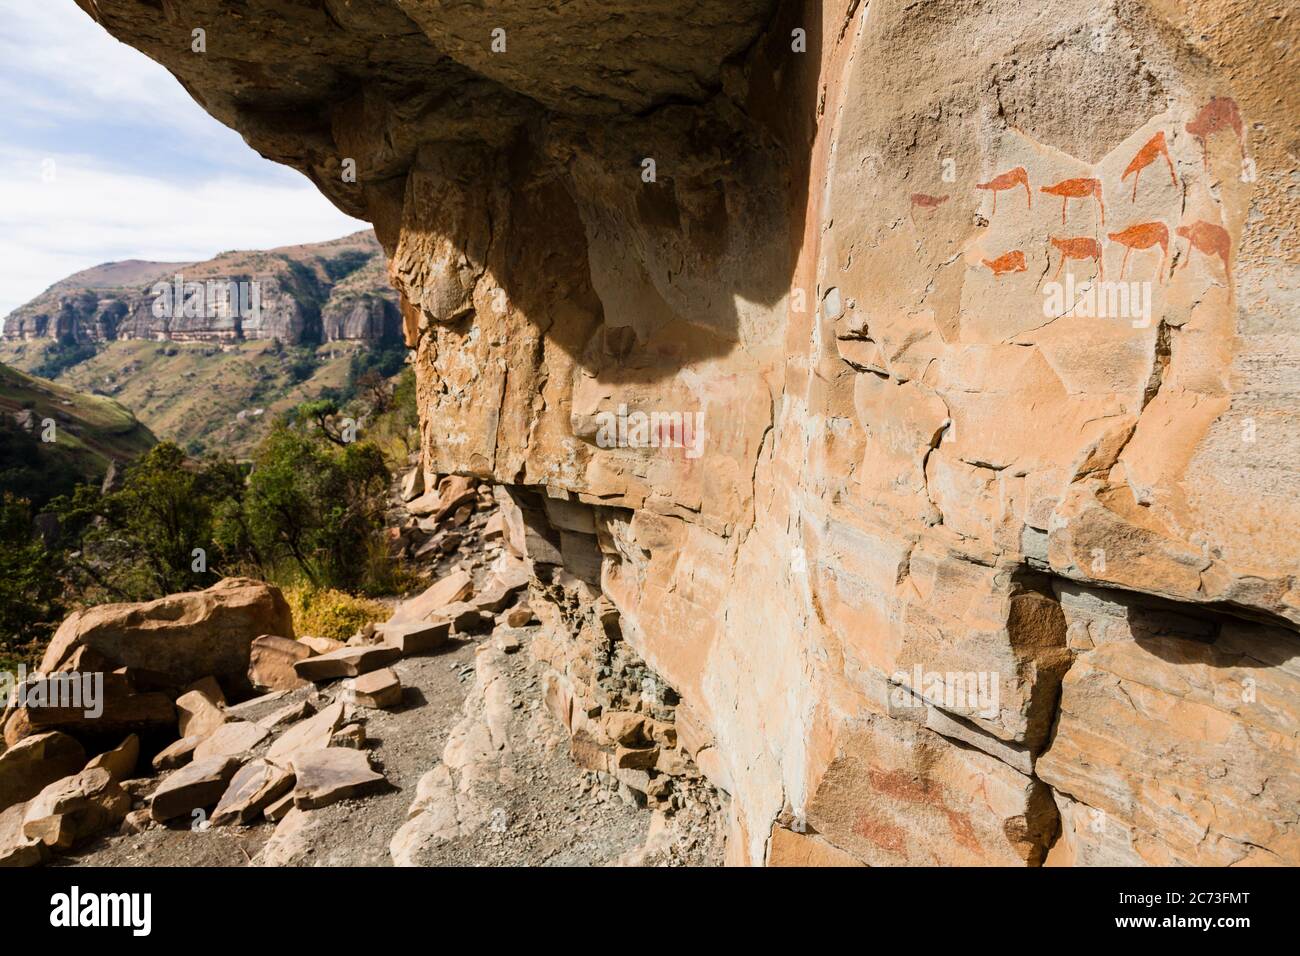 Drakensberg, site d'art rupestre « Battle Cave », peintures rupestres de Bush, réserve de jeux de Giants Castle, Uthukela, KwaZulu-Natal, Afrique du Sud, Afrique Banque D'Images